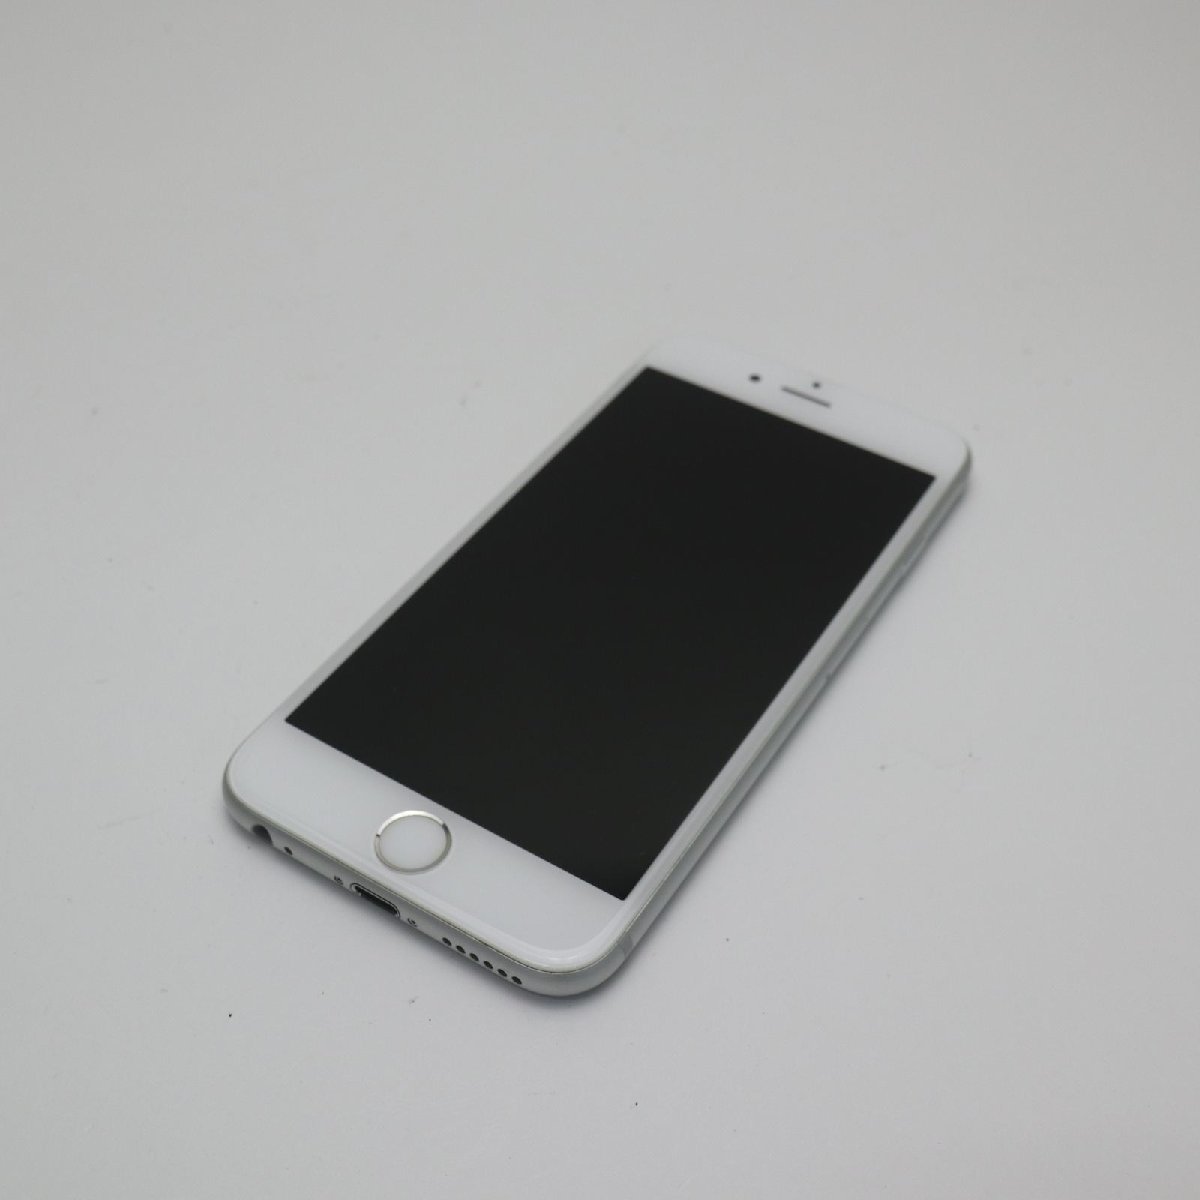 新品同様 SIMフリー iPhone6S 32GB シルバー スマホ 本体 白ロム 中古 あすつく 土日祝発送OK